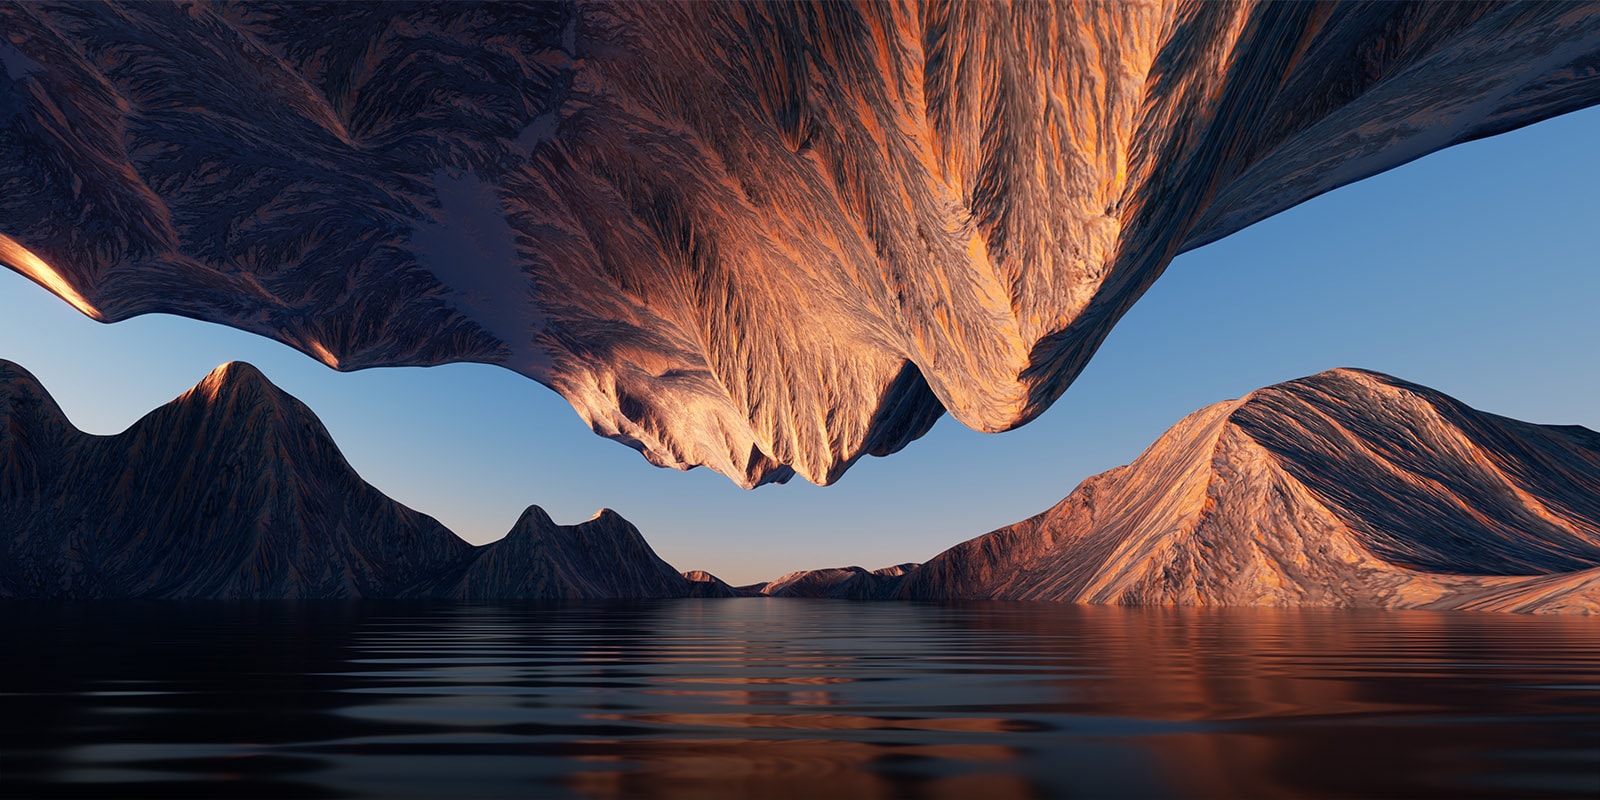 Det naturlige billede af bjergtoppene, der mødes over og under hinanden oppefra og ned, viser kontrast og detaljer.